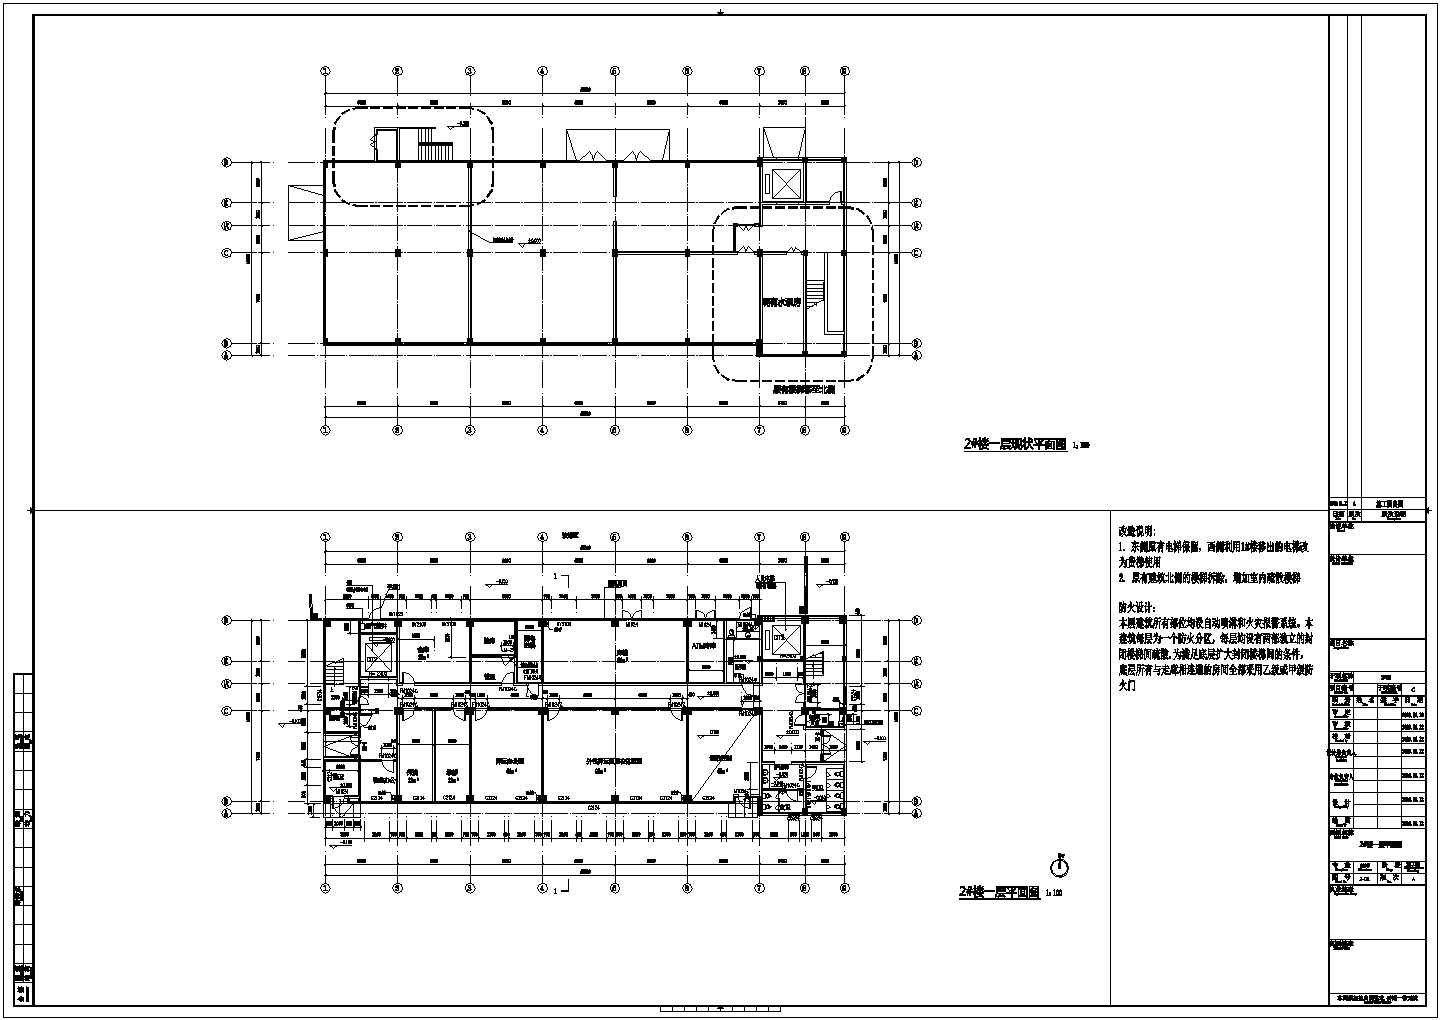 原框架结构标准厂房改建为六层框架结构办公楼改造加固结构施工图